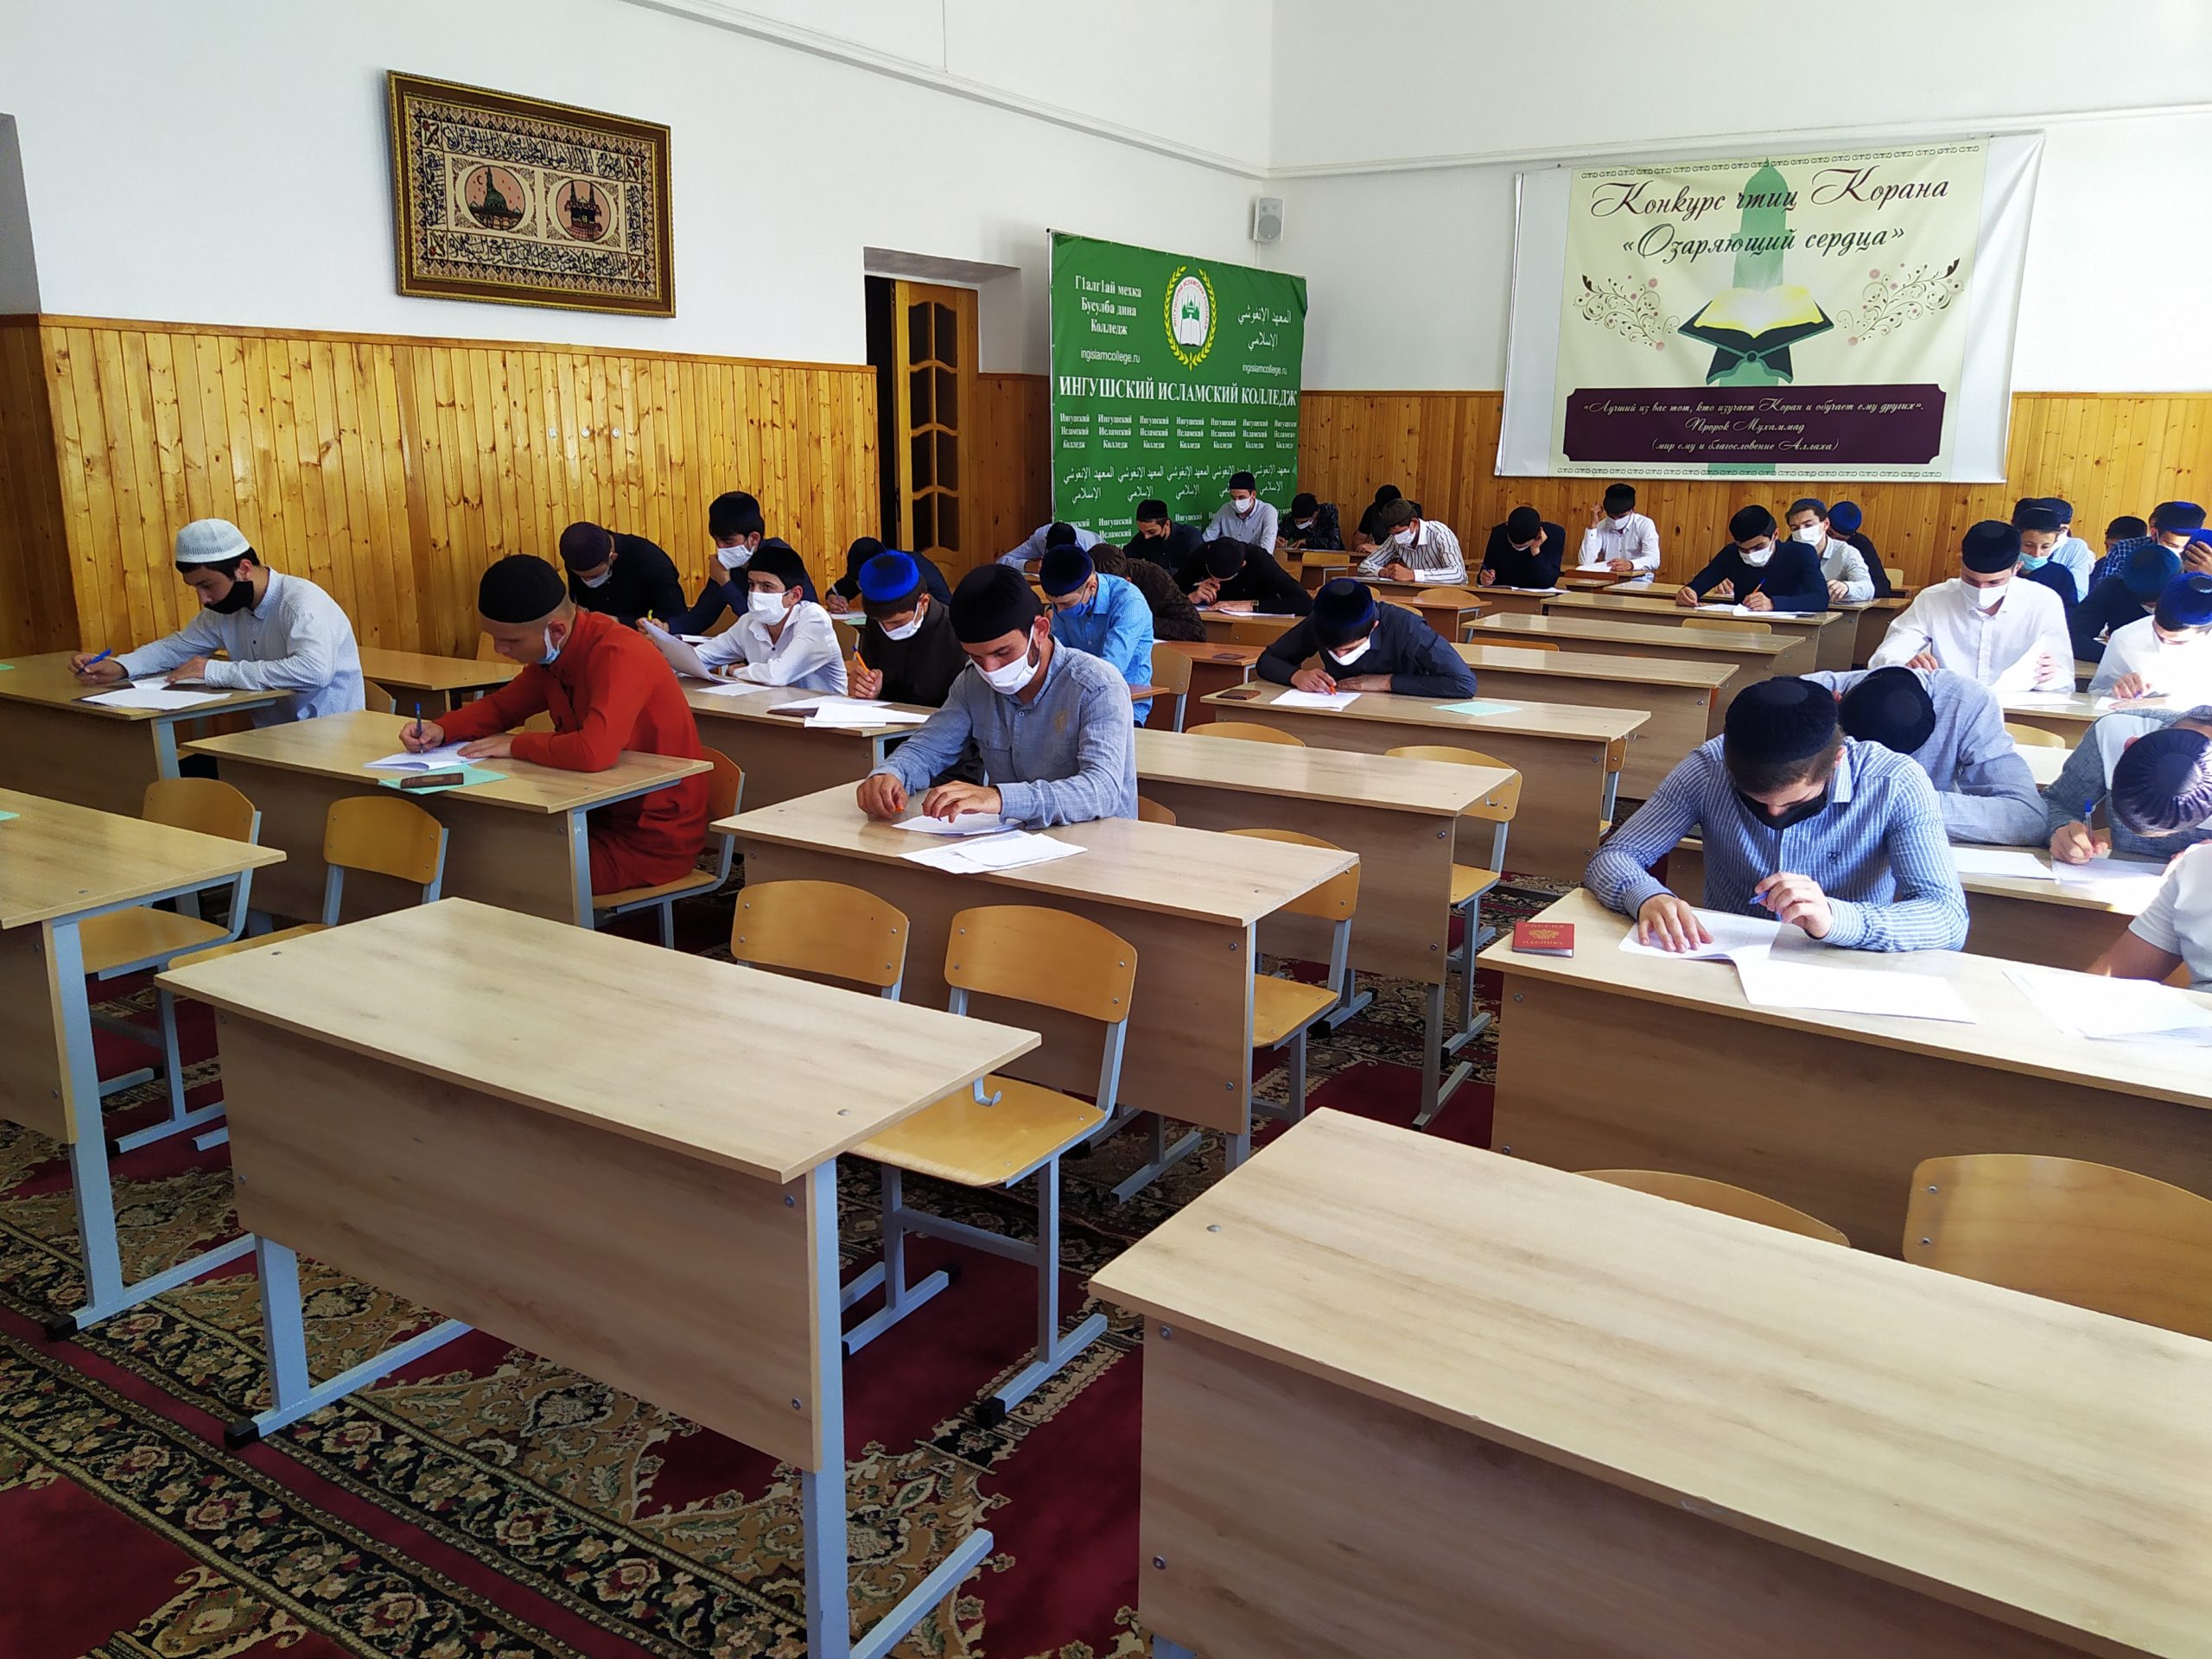 В Ингушском исламском колледже завершились вступительные испытания абитуриентов